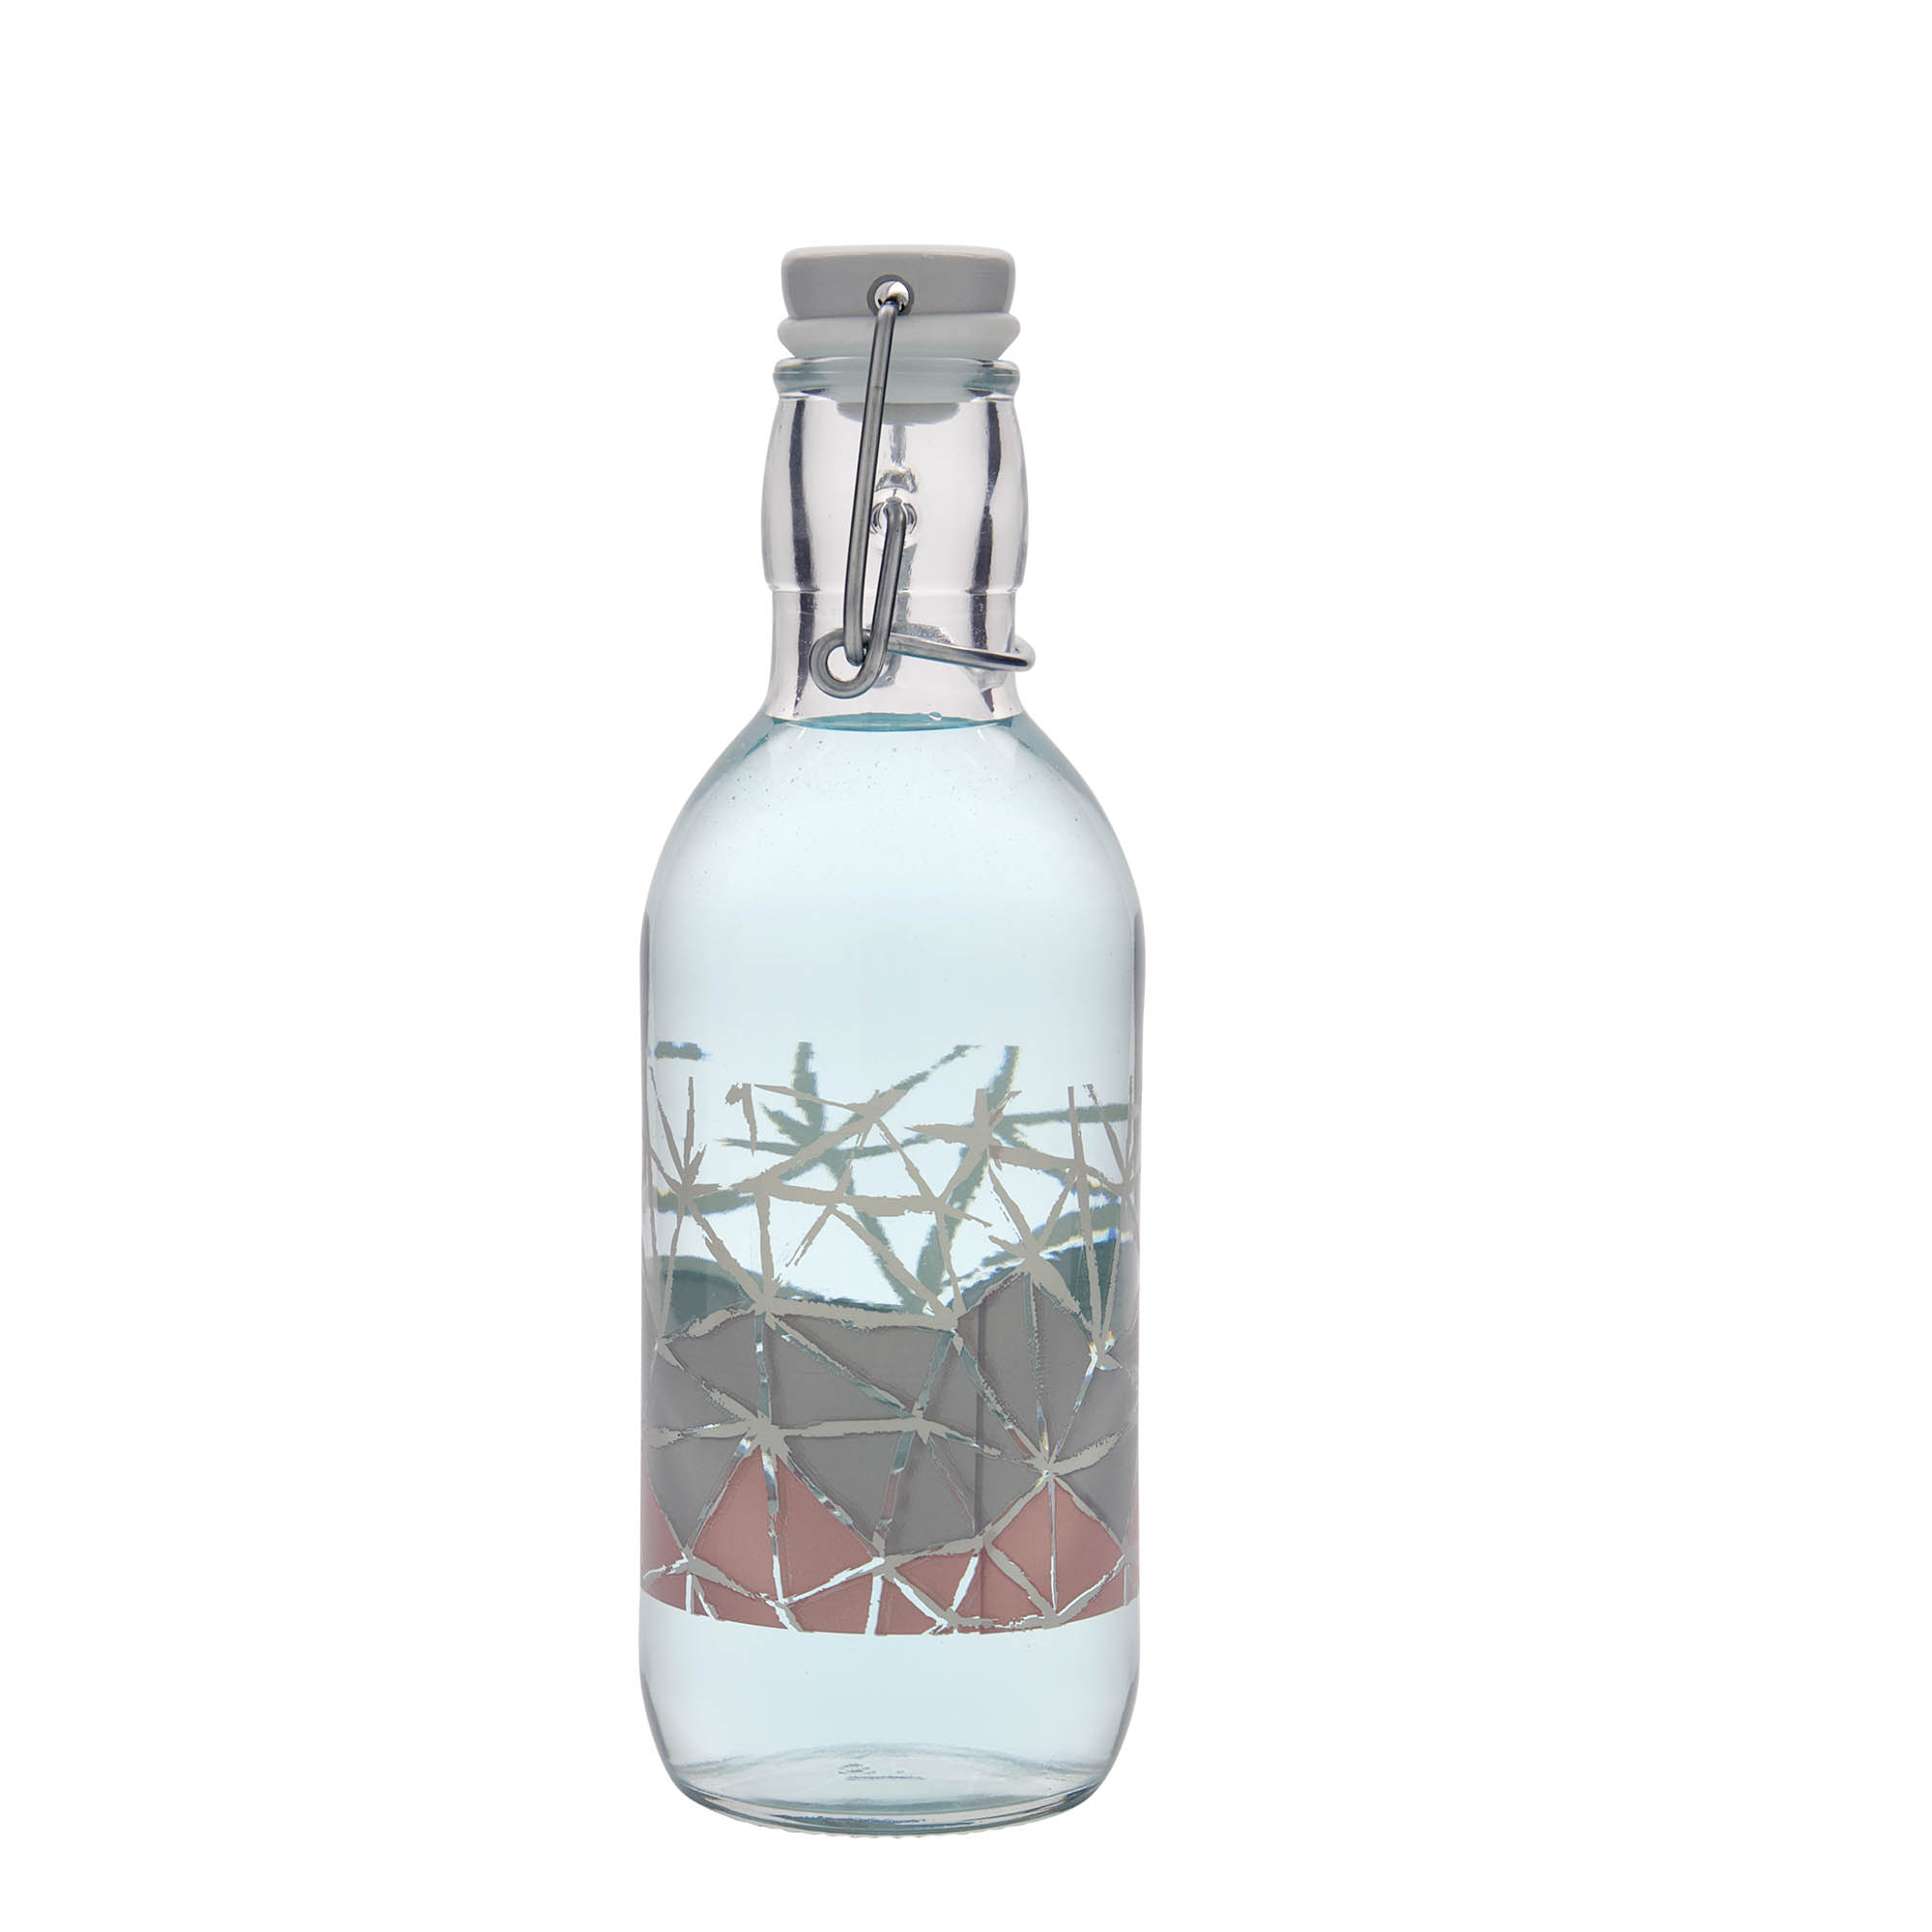 500 ml-es üvegpalack 'Emilia', motívum: Manolibera rosa, szájnyílás: csatos zár